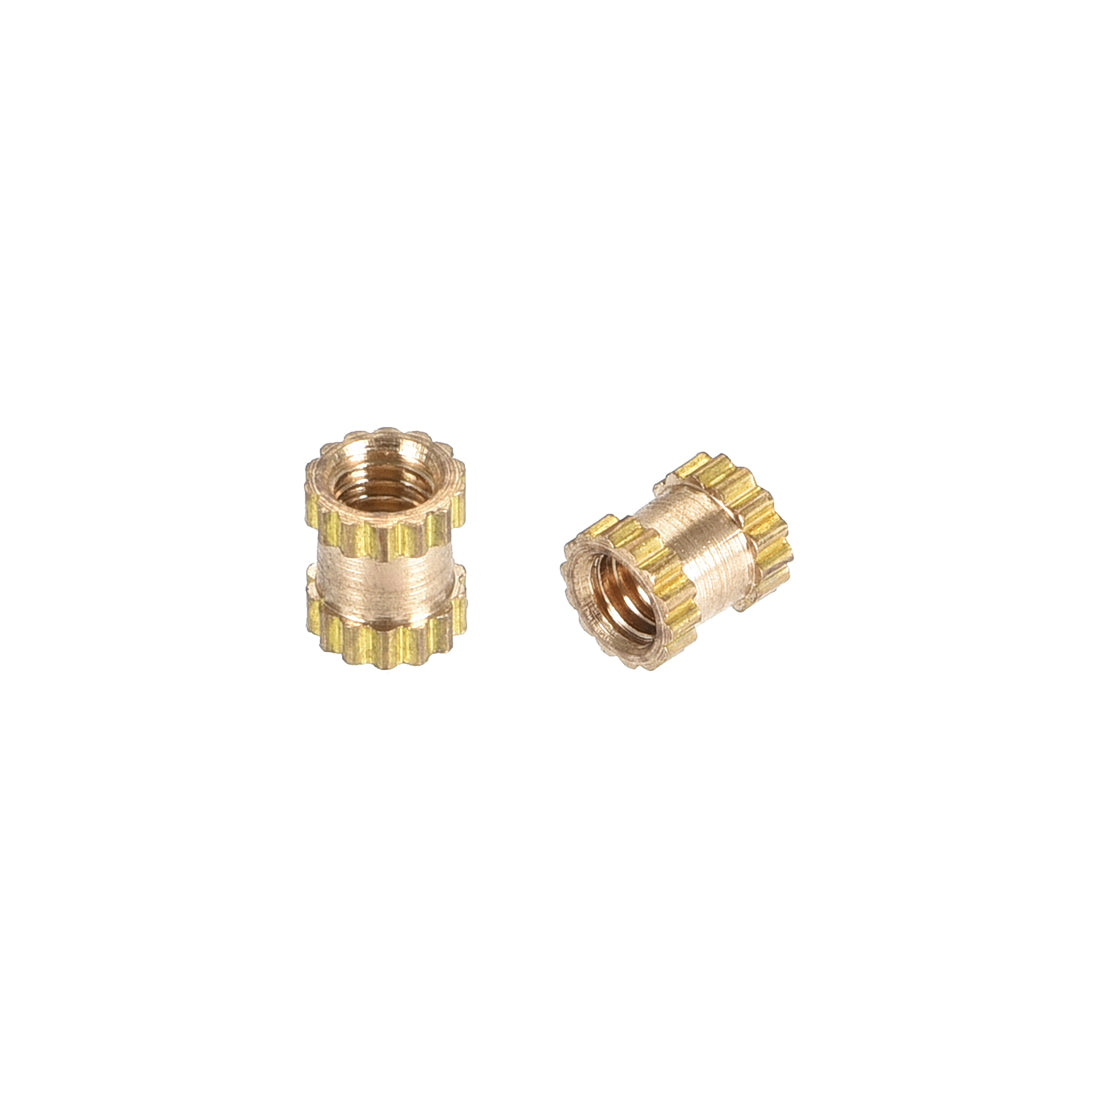 uxcell Uxcell Knurled Insert Nuts, M2.5 x 4mm(L) x 3.5mm(OD) Female Thread Brass Embedment Assortment Kit, 100 Pcs